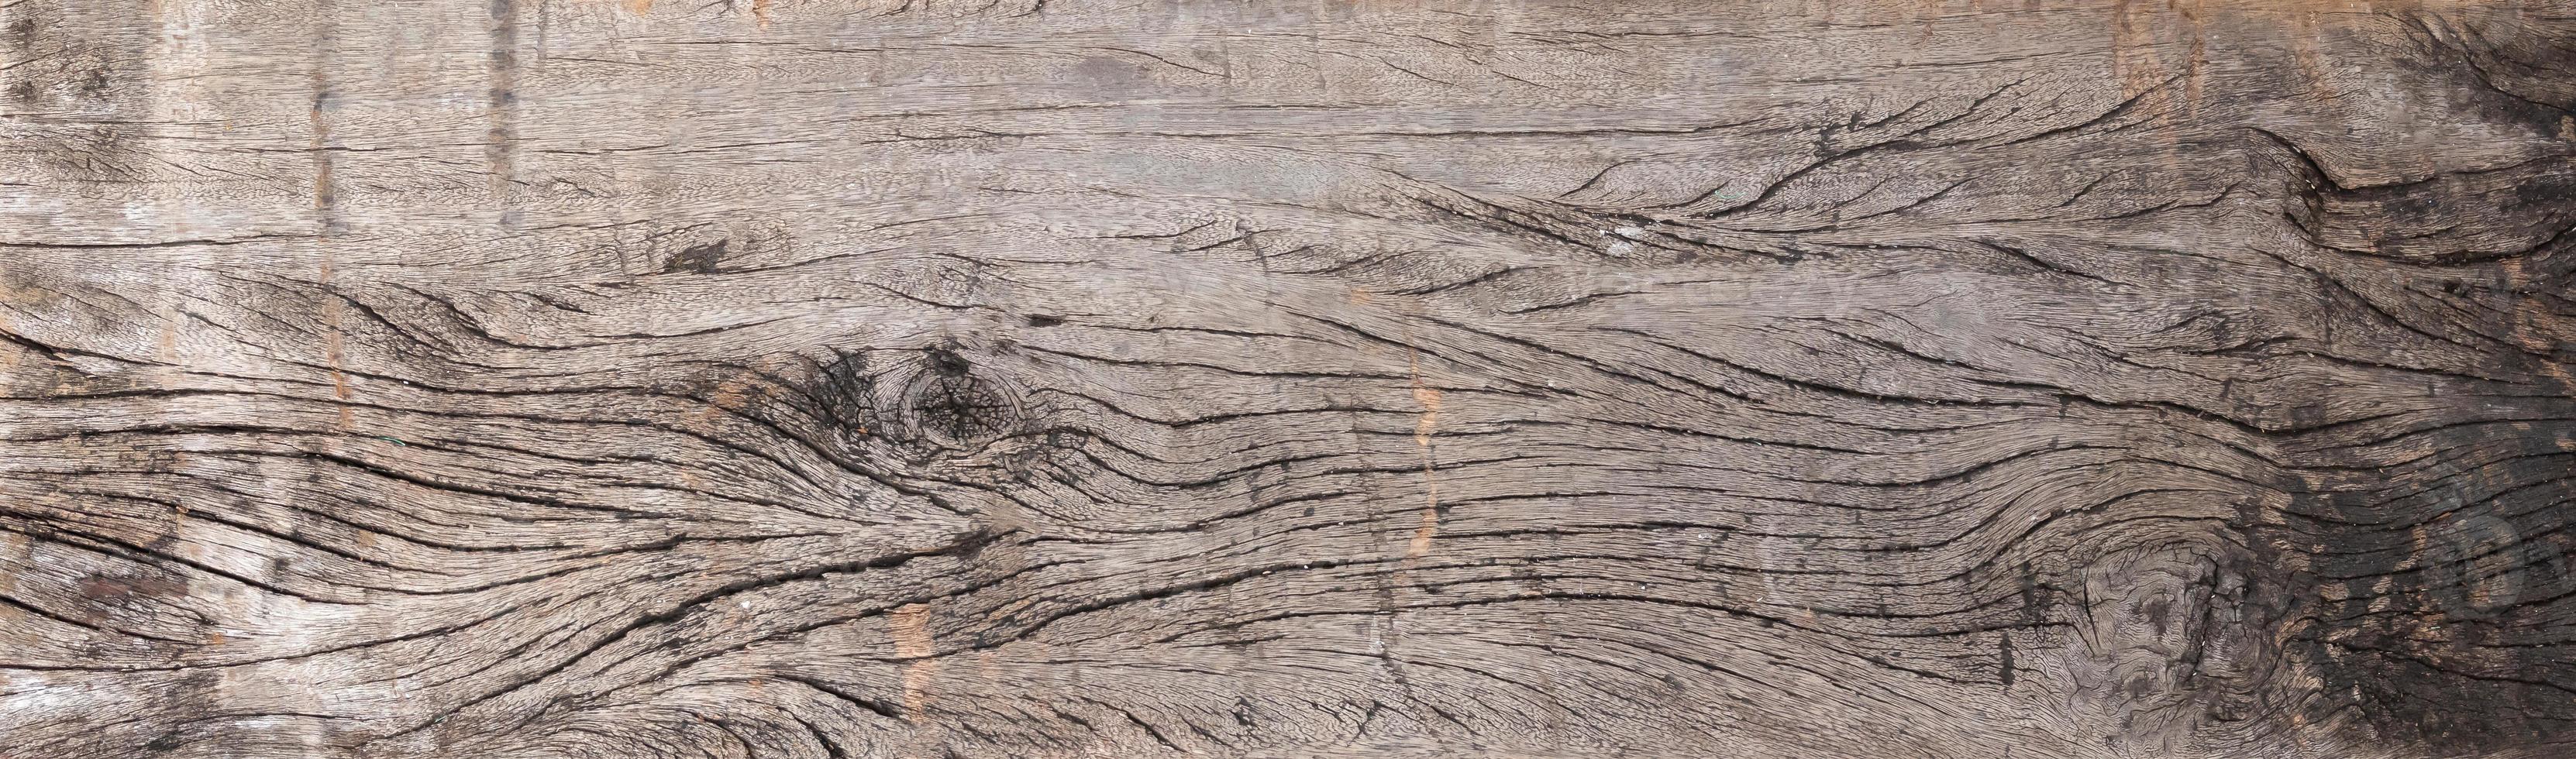 fond de texture de surface de planches de bois naturel photo